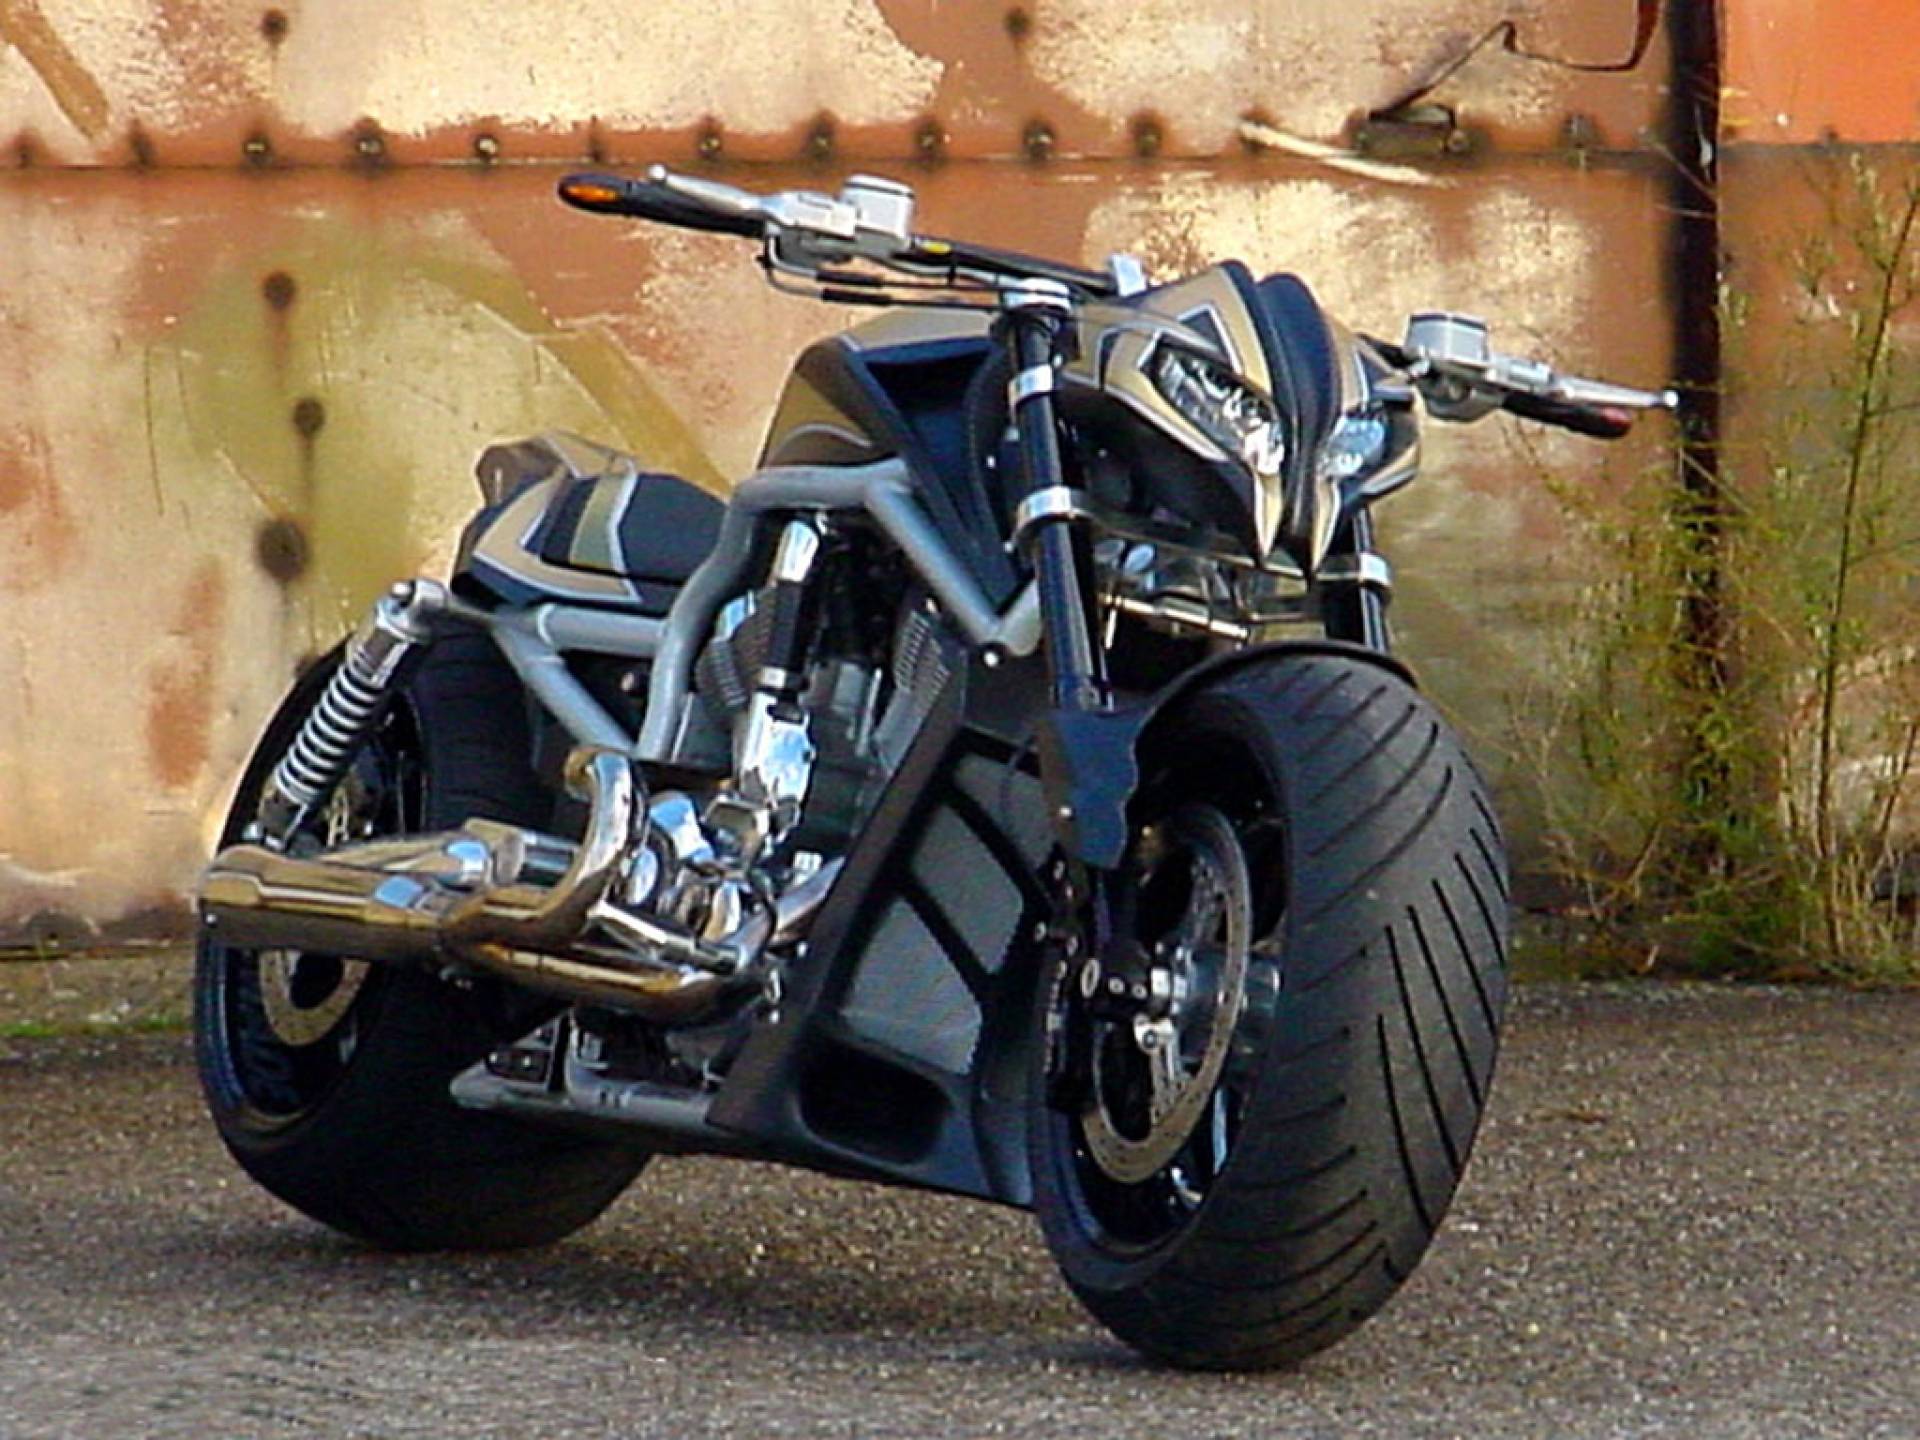 Detail Images Of Harley Davidson Bike Nomer 12